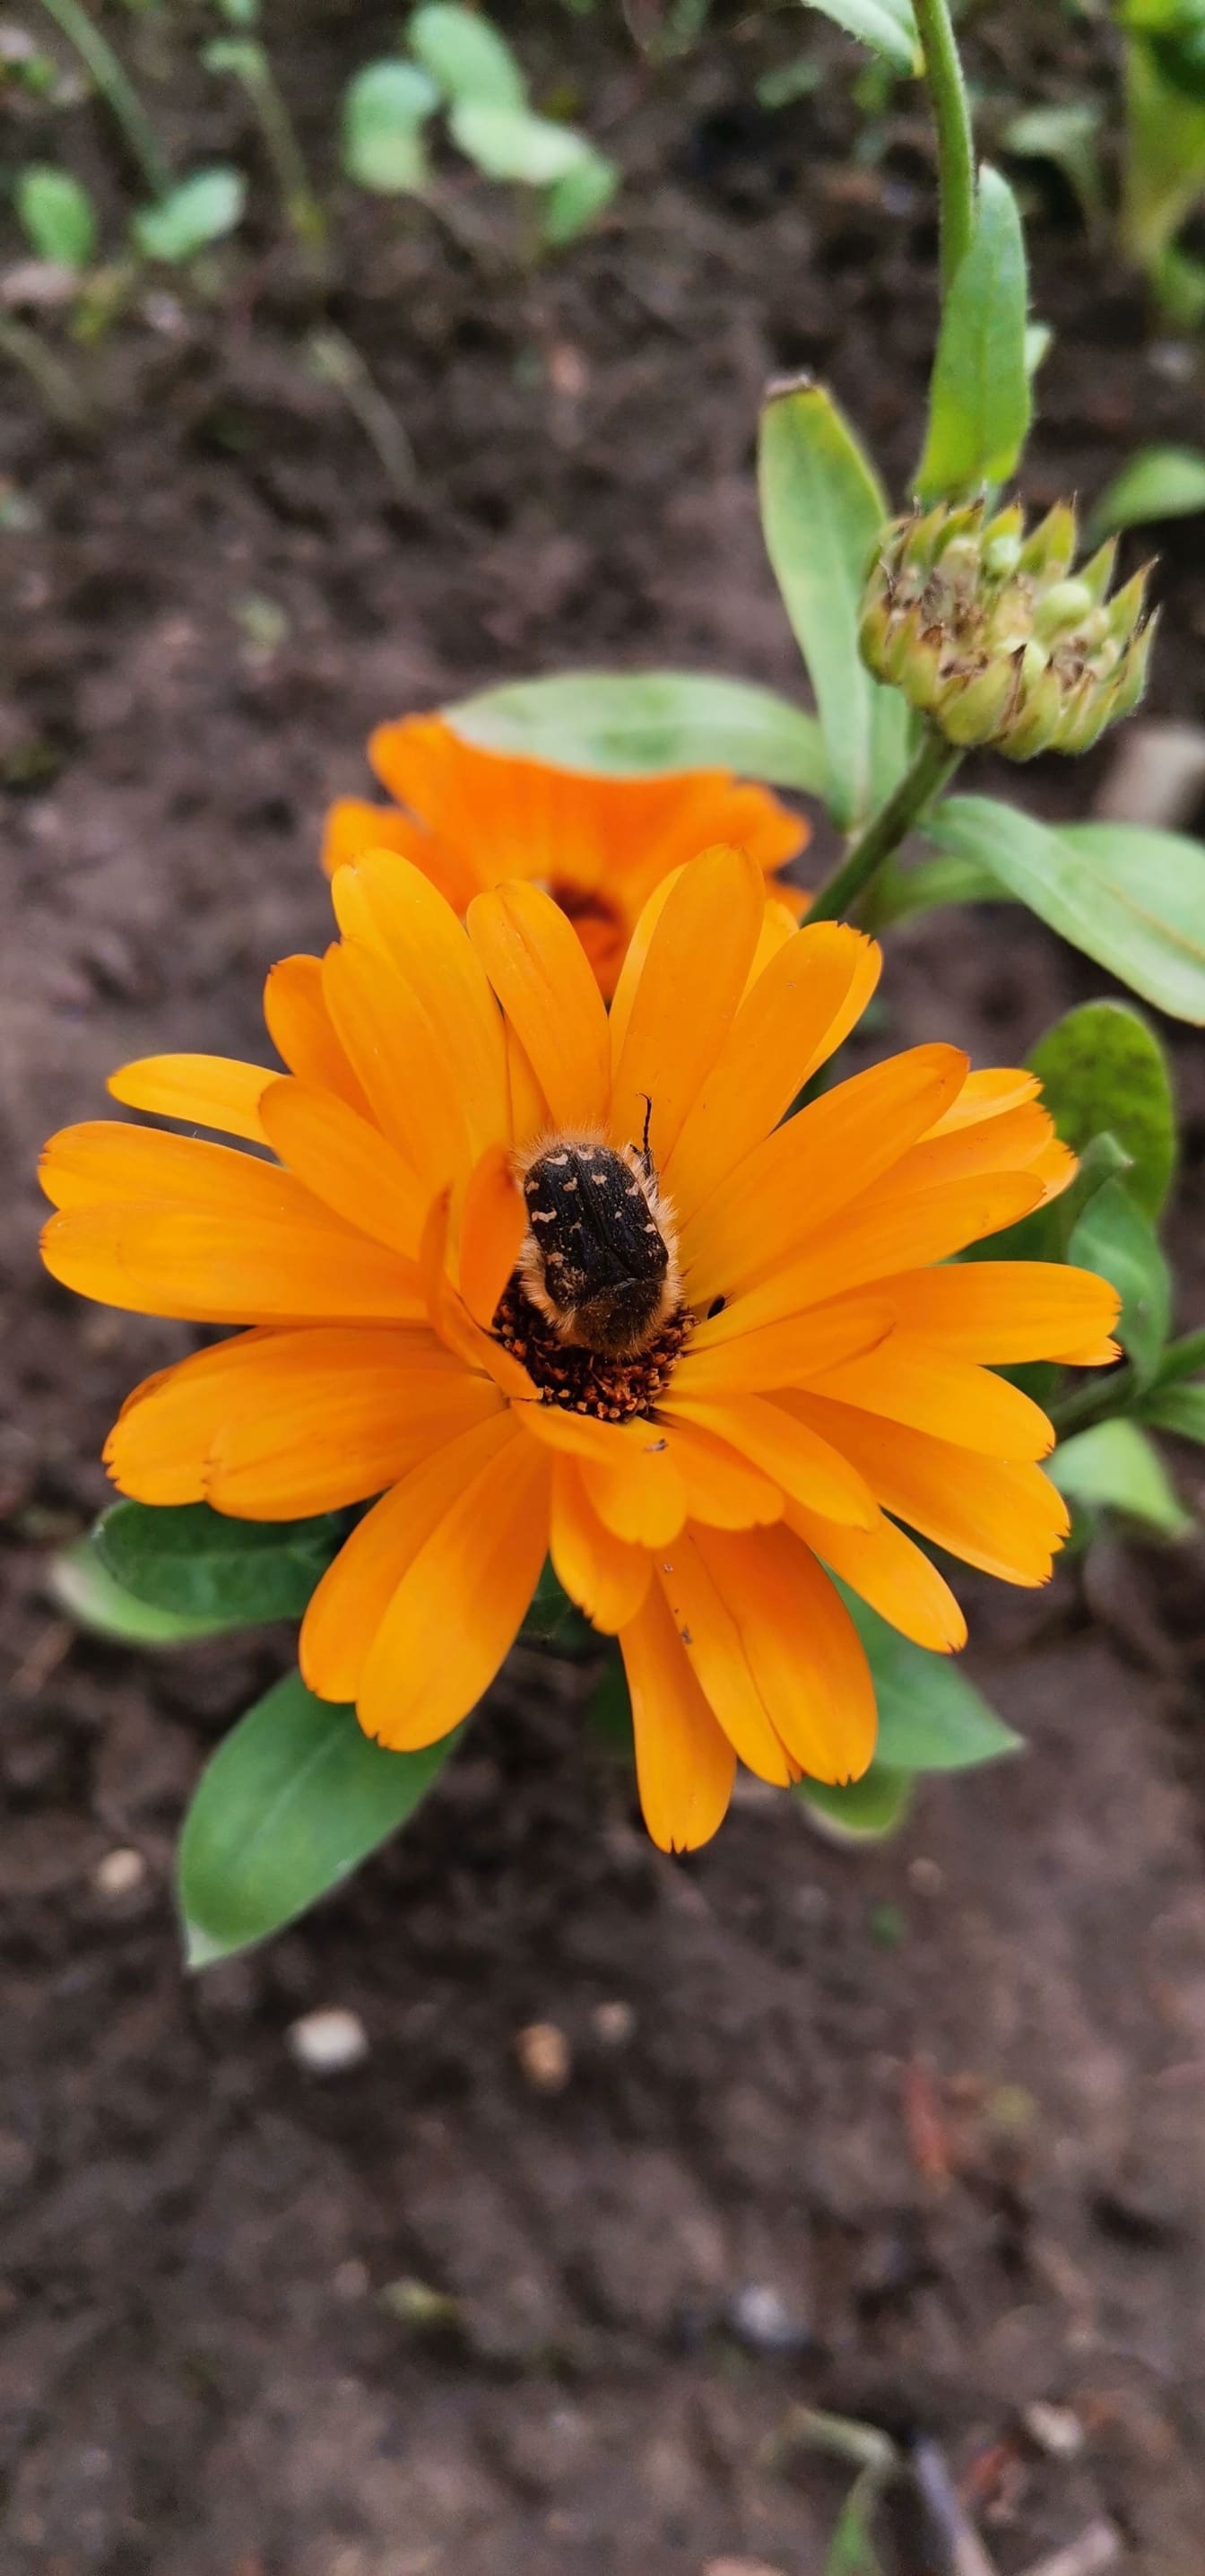 Средиземноморский пятнистый жук- (Oxythyrea funesta) на оранжево-желтом цветке